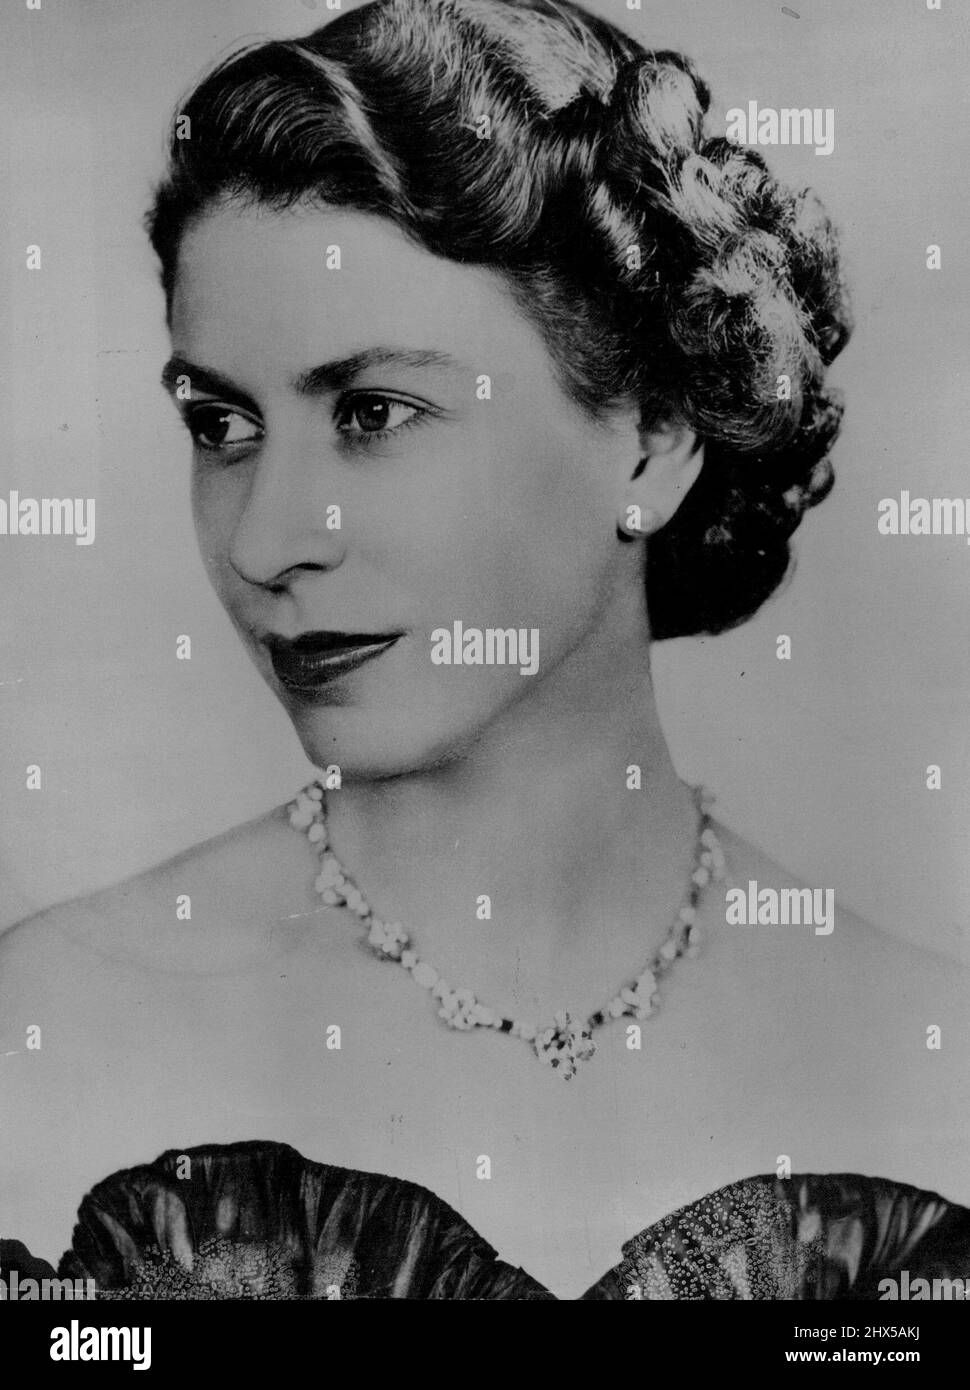 Das Queen-New Portrait Dieses neue Kommandoportrait von Queen Elizabeth II. Ist die erste formale Studie, die ***** gemacht wurde Ihr Beitritt zur Chrone. Über dem Ausschnitt ihres schwarzen ***** Kleid, Königin trägt-die Diamant-Ausschnitt, die ihr von der Union of South Africa als 31. Geburtstag Geschenk. 8. Juli 1952. (Foto von Reuterphoto). Stockfoto